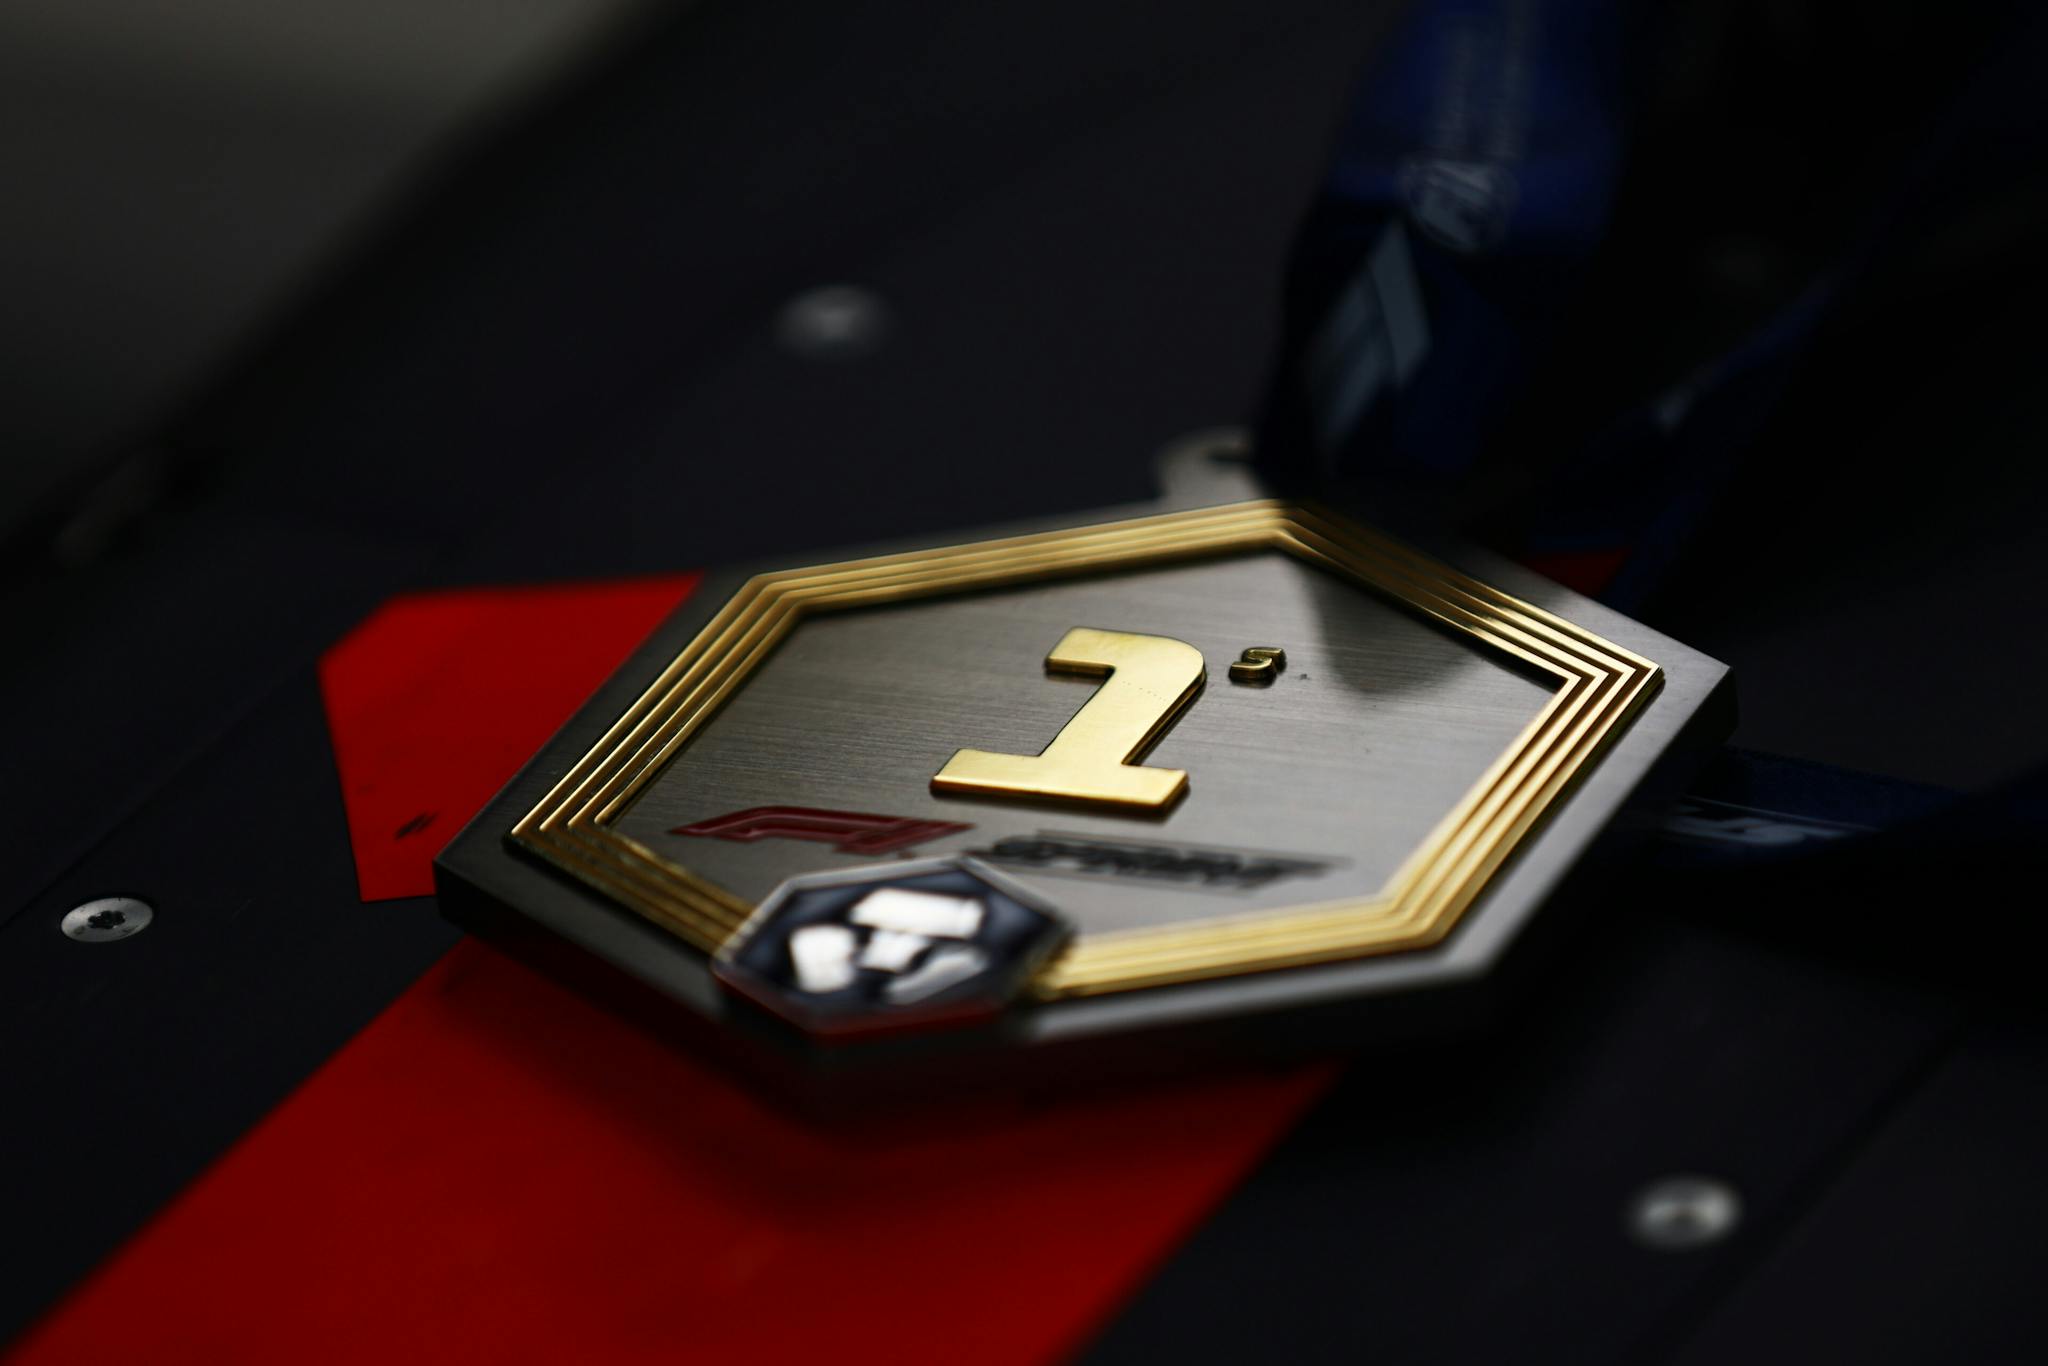 Zwycięzcy wyścigów F1 będą dostawać pamiątkowe medale